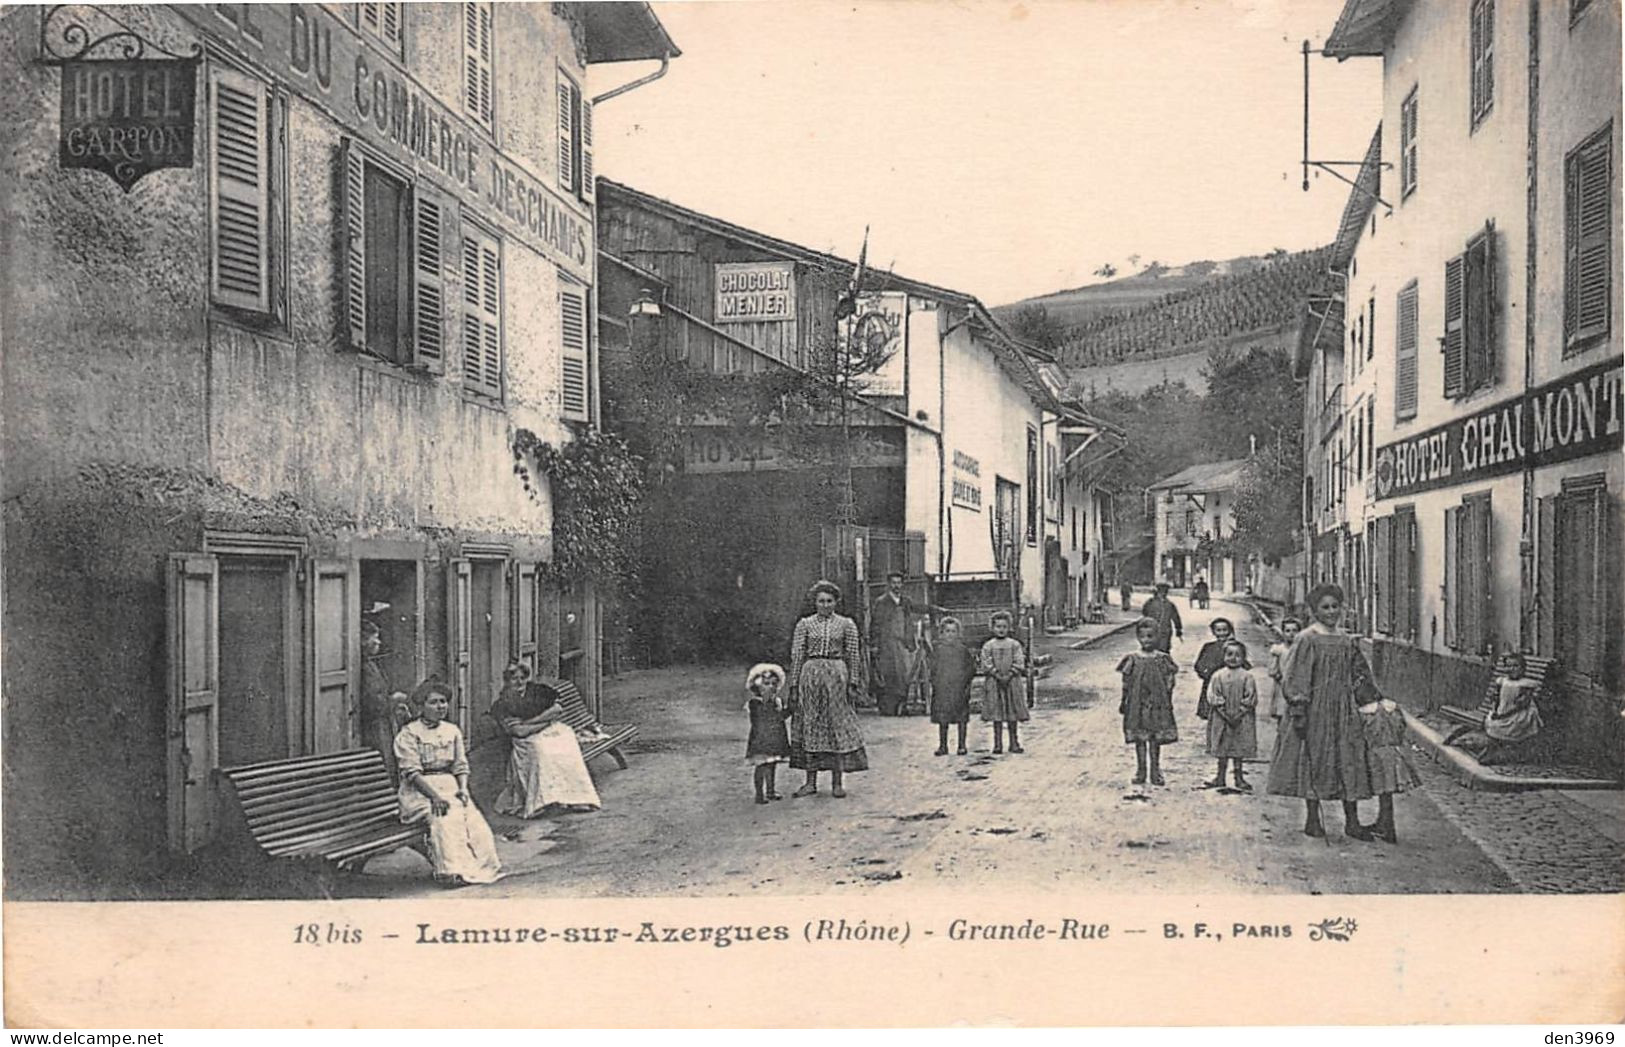 LAMURE-sur-AZERGUES (Rhône) - Grande Rue - Hôtel Du Commerce Deschamps - Pub Chocolat Menier - Voyagé 1914 (2 Scans) - Lamure Sur Azergues